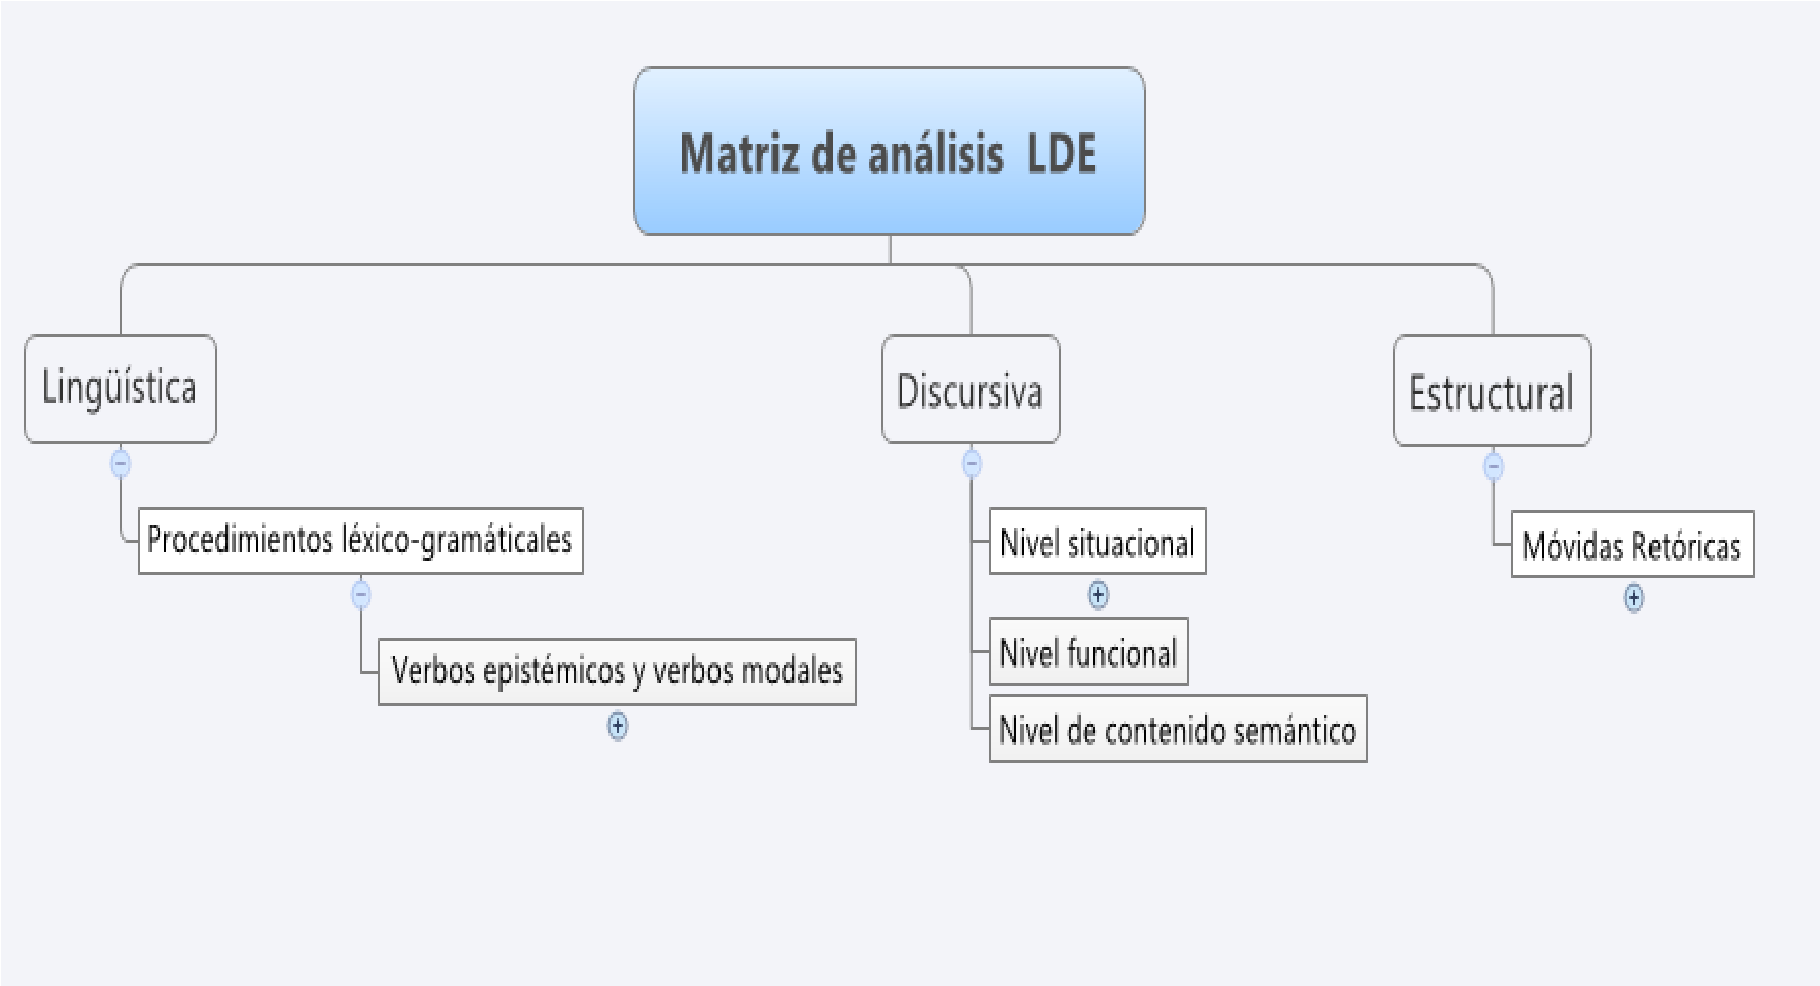 Matriz de análisis lingüística, discursiva y estructural